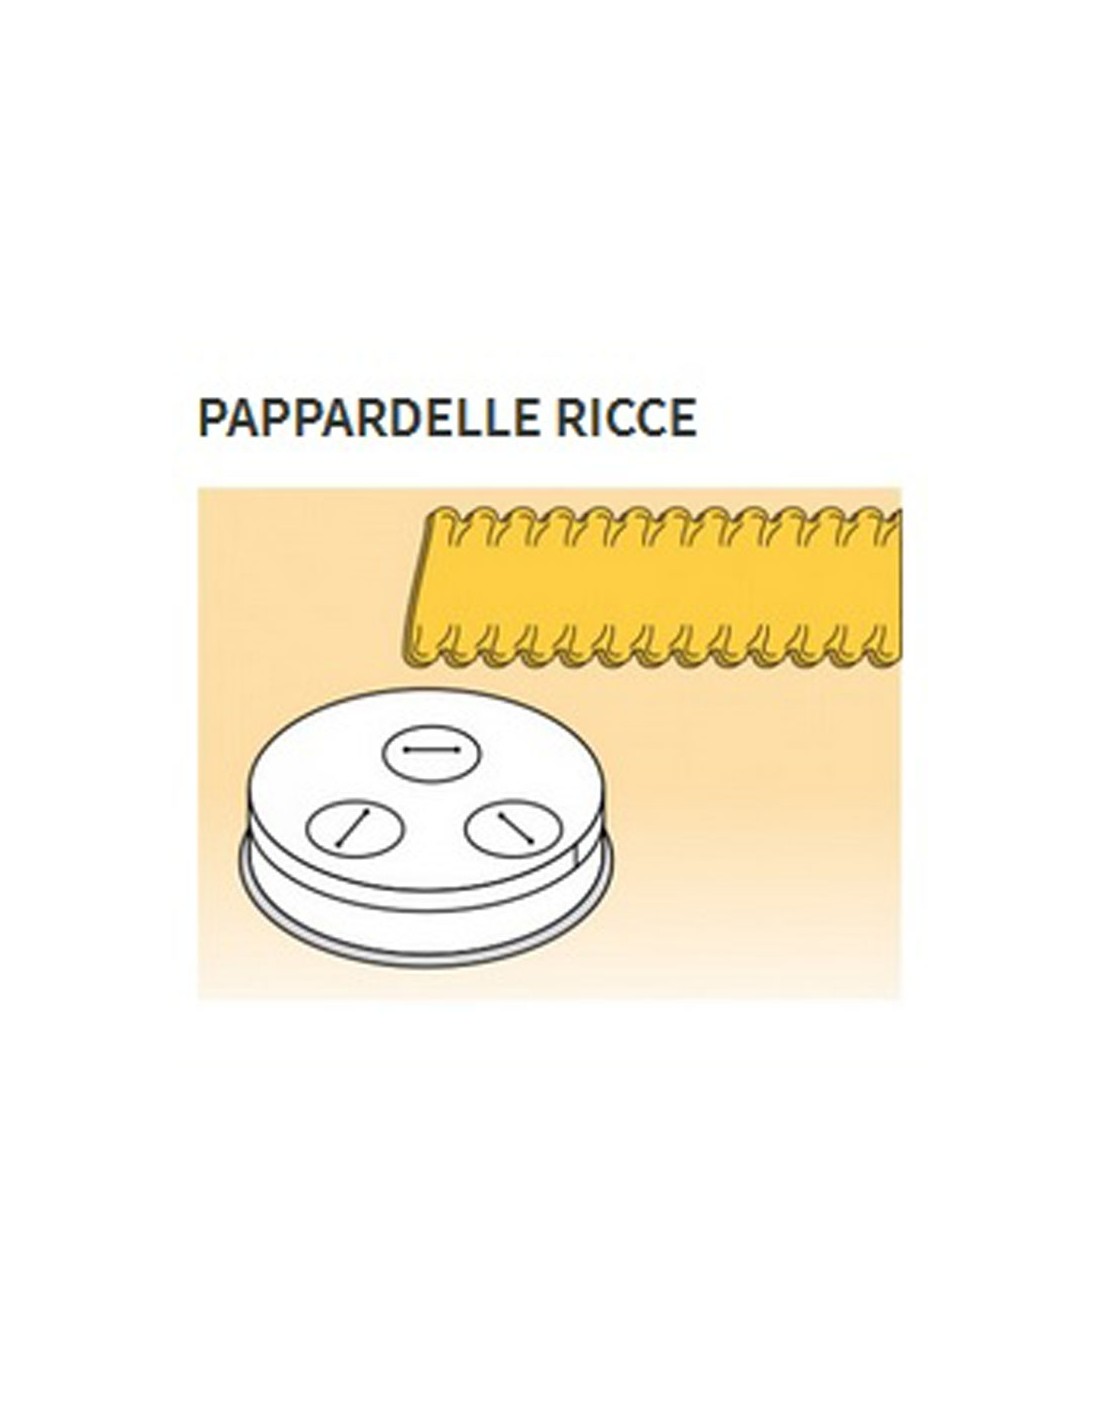 Trafile formati vari in lega ottone - Bronzo - Per macchina pasta fresca modello MPF15 - Pappardelle ricce mm 16